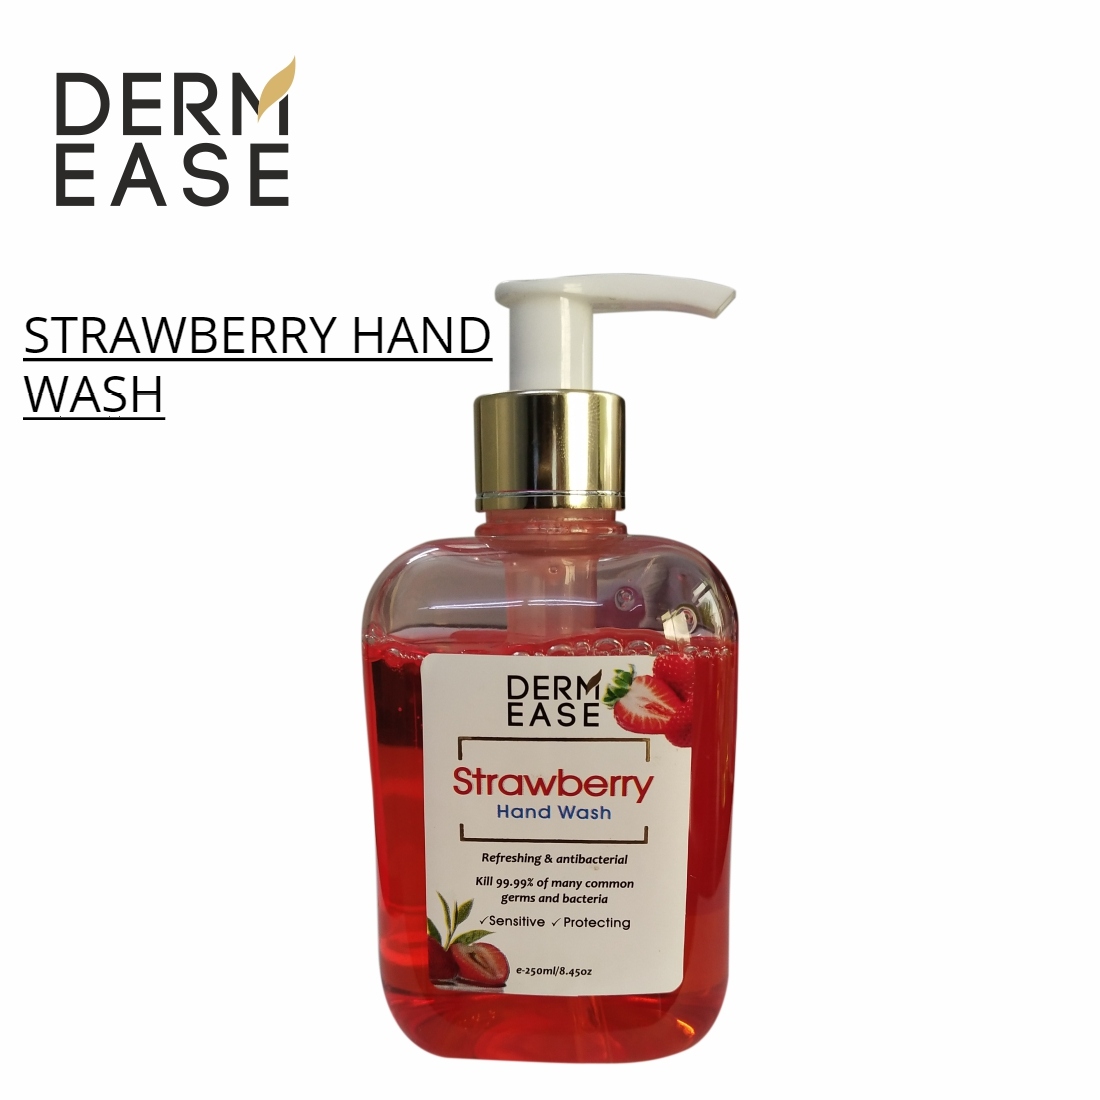 DERM EASE Strawberry Hand Wash